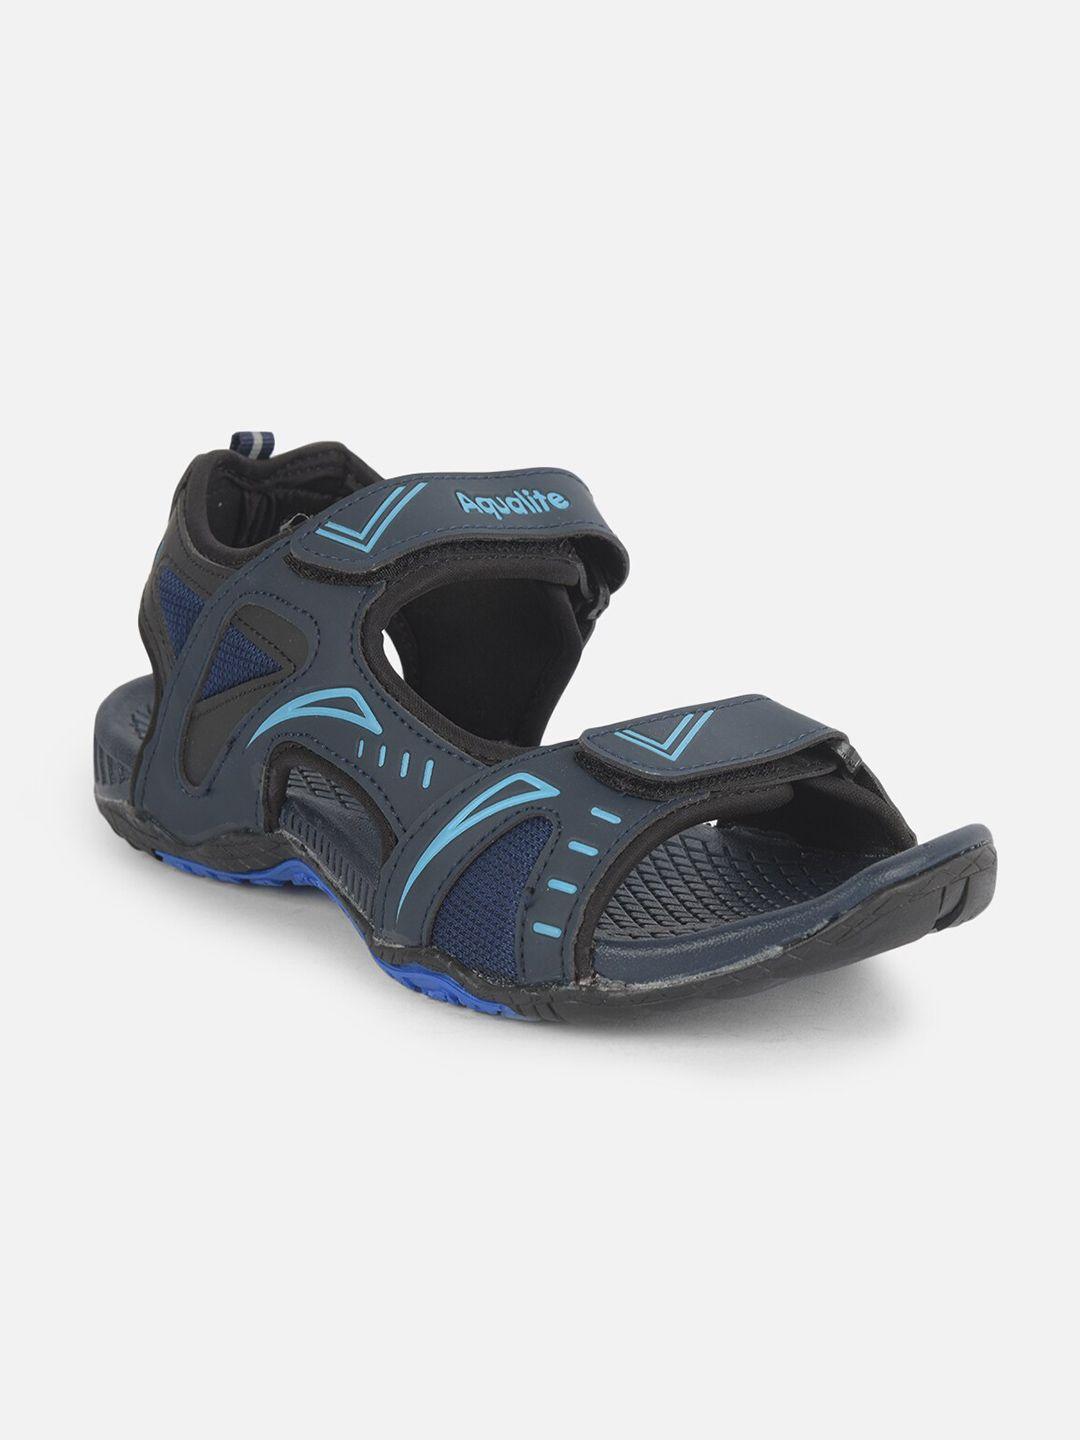 aqualite-men-navy-blue-comfort-sandals